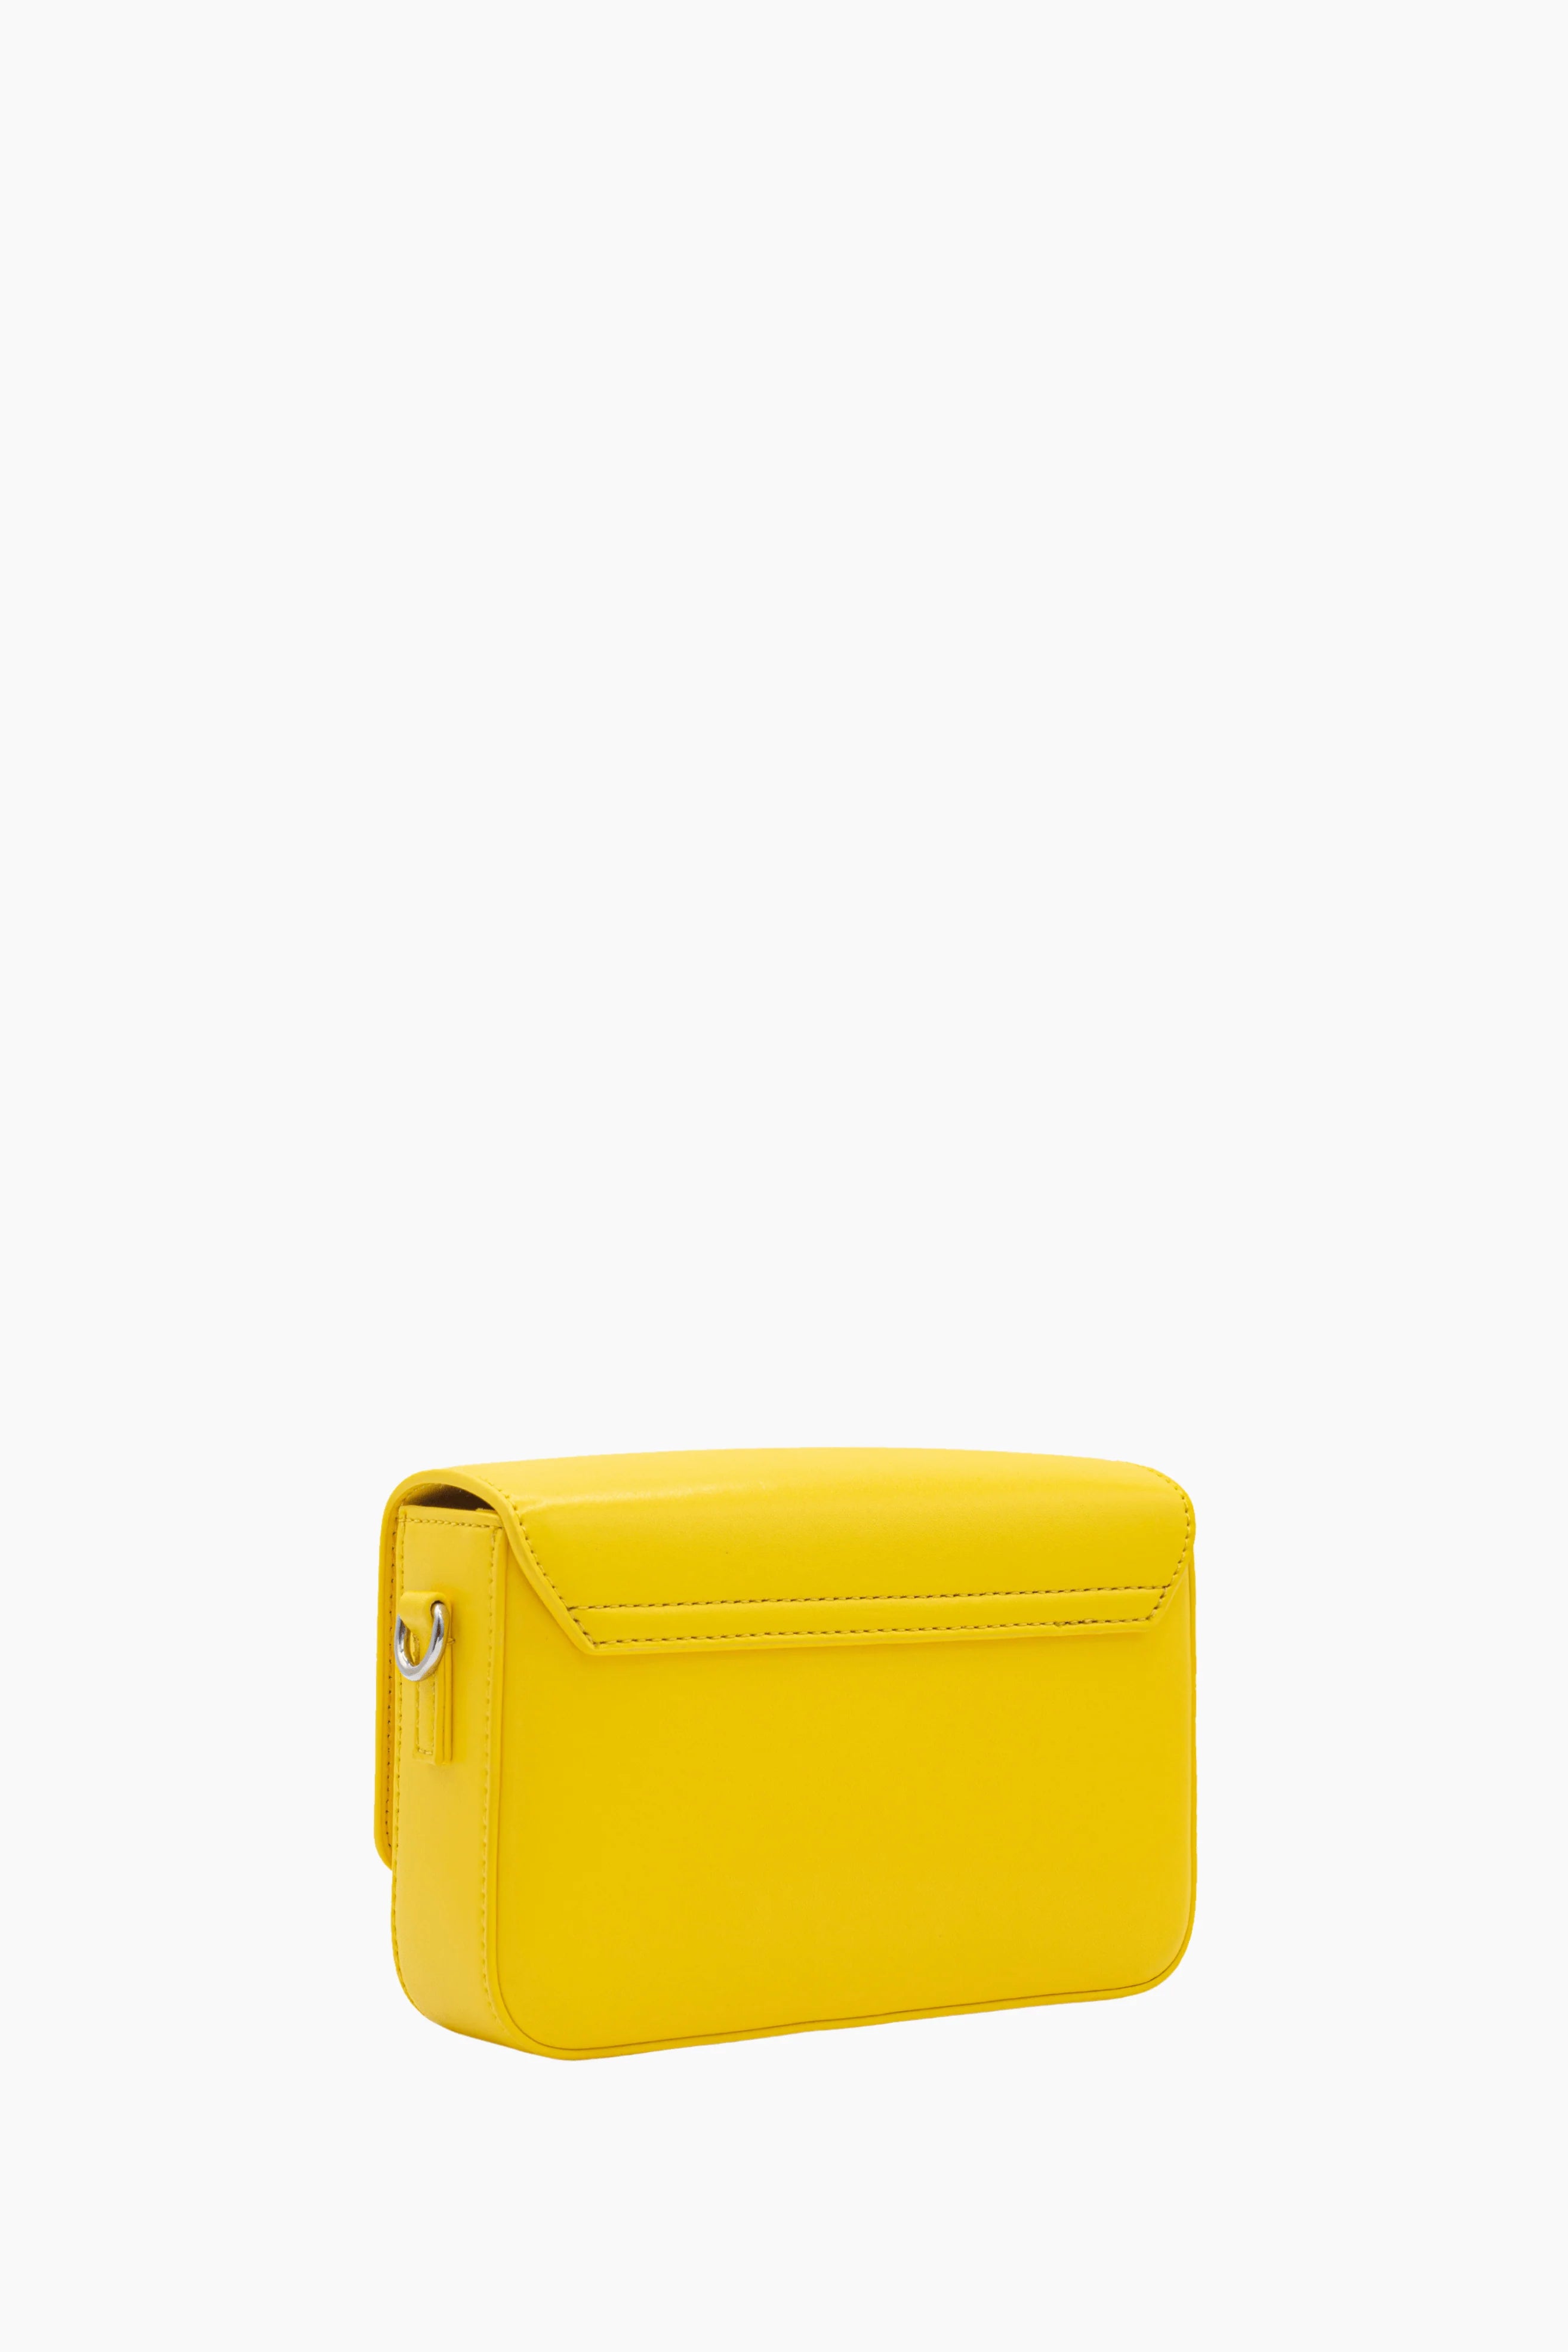 Yellow Pantone Bag